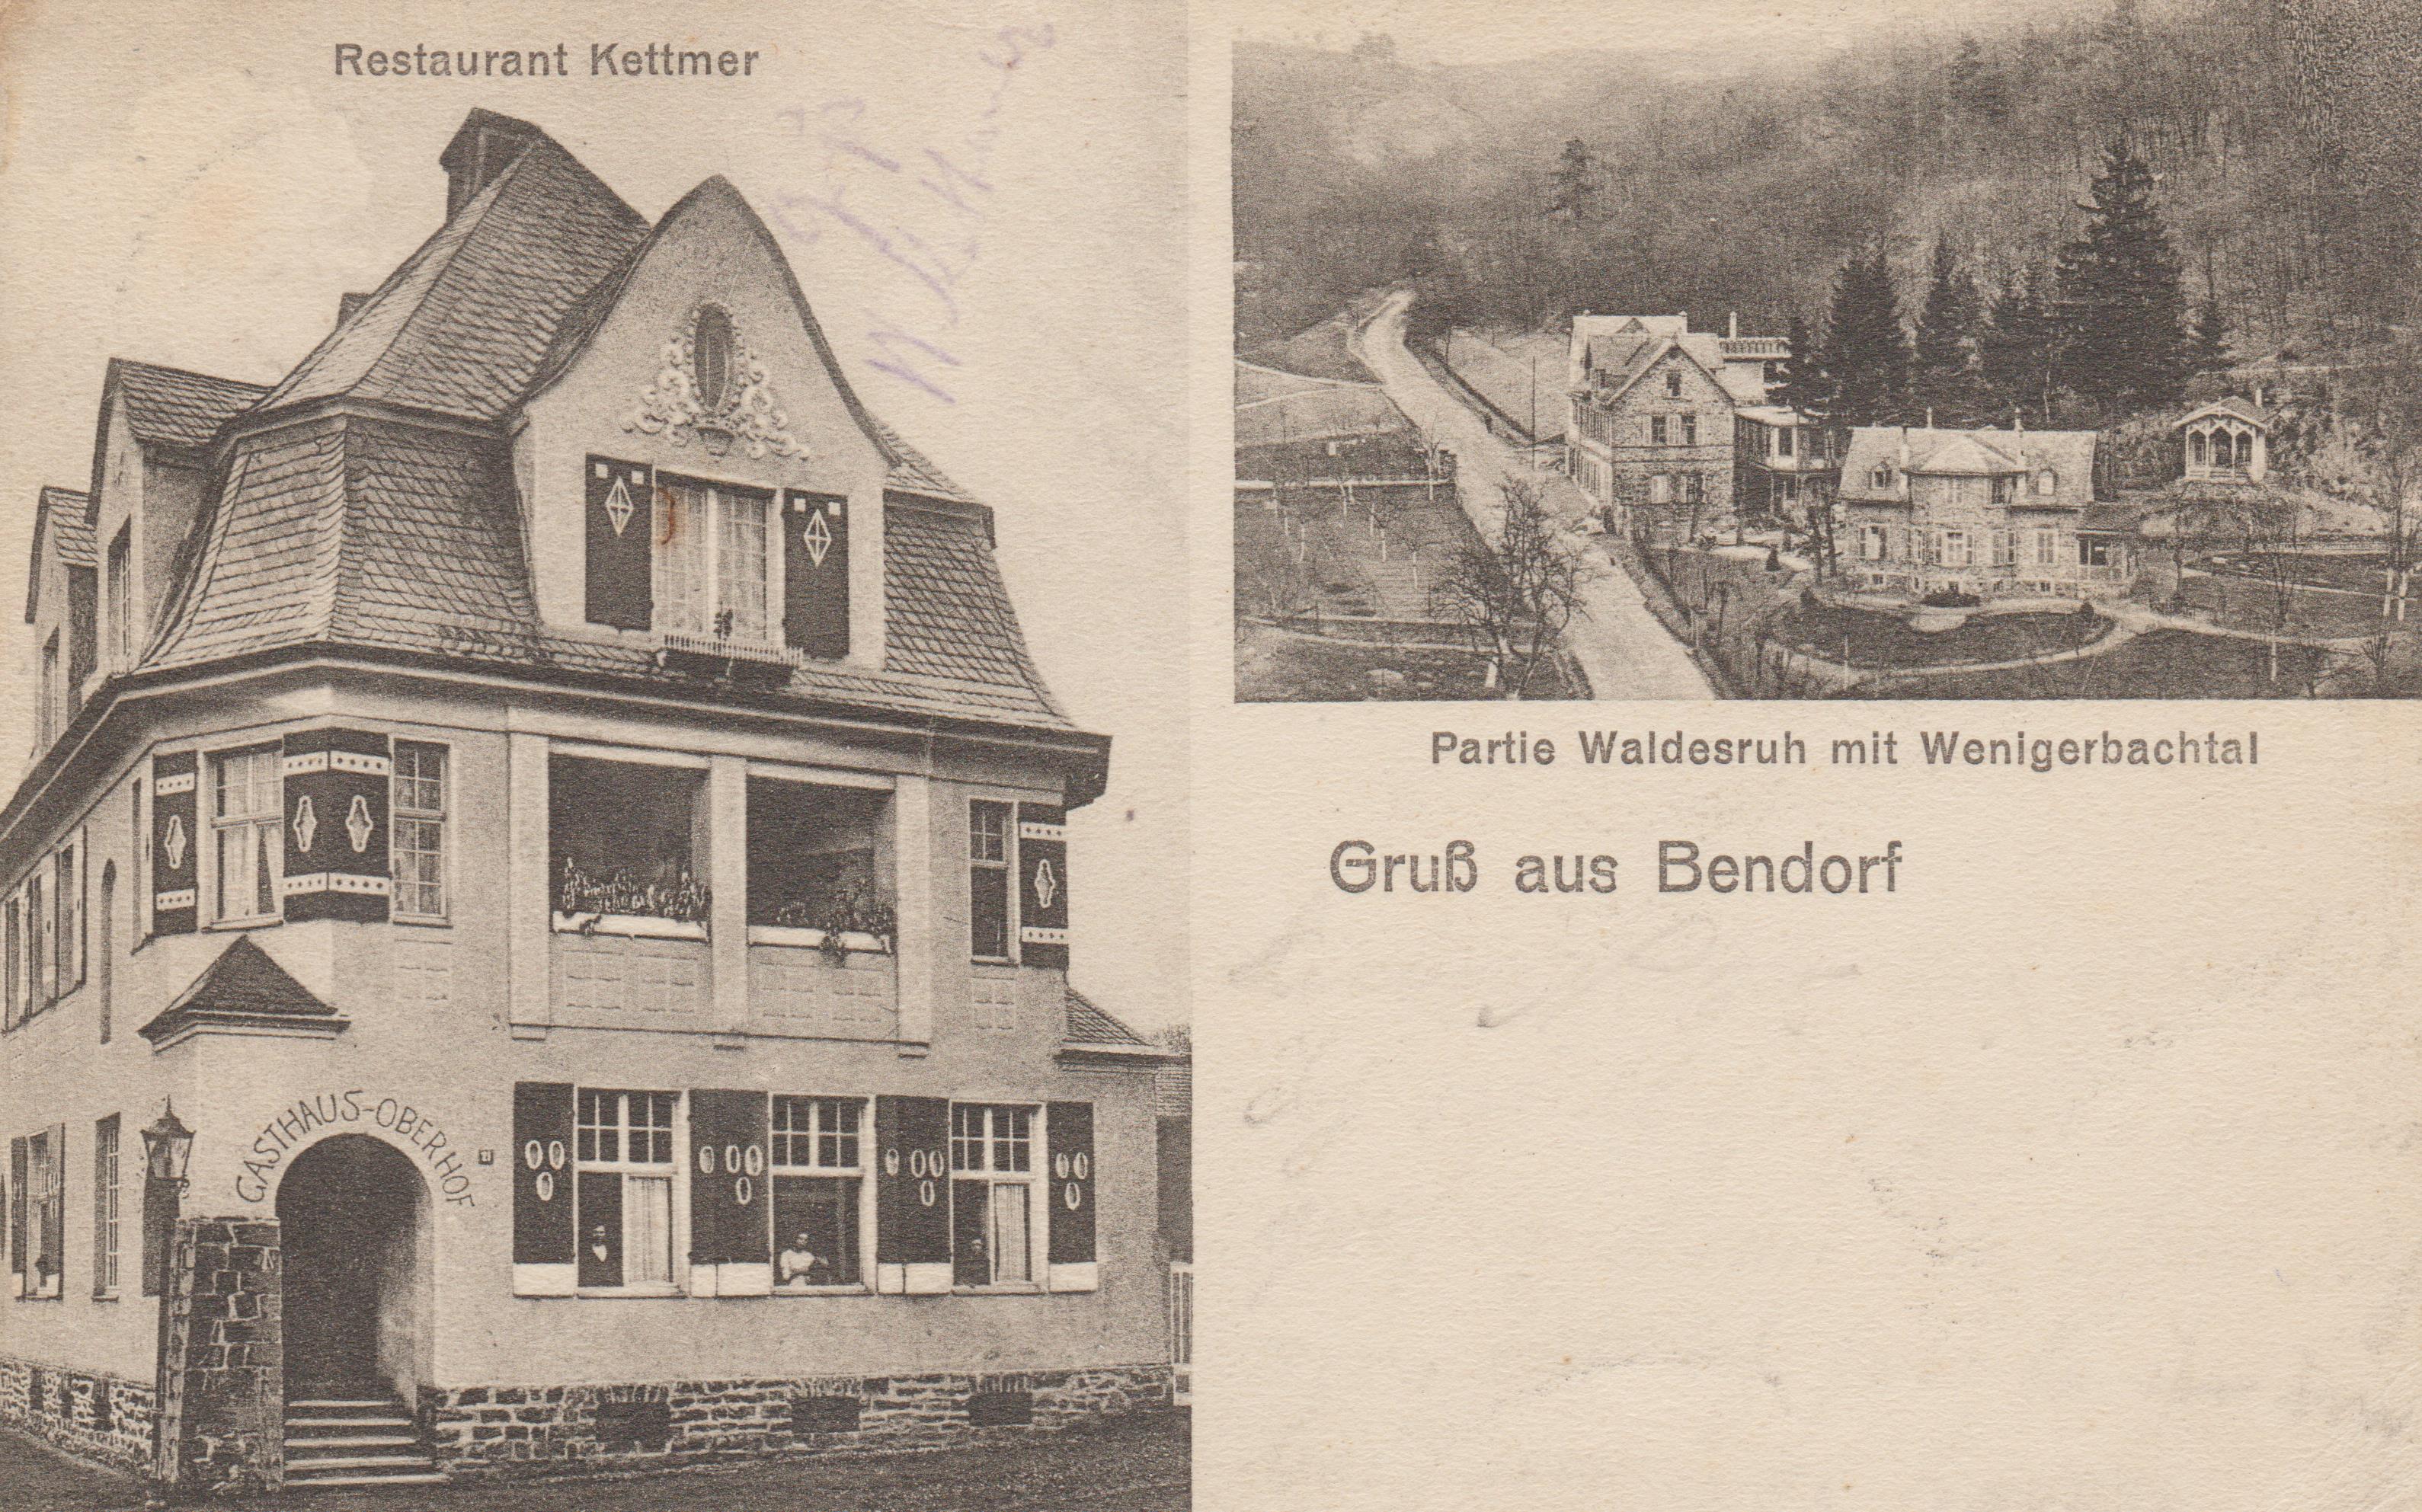 Restaurant Kettmer & Partie Waldesruh mit Wenigerbachtal in Bendorf 1912 (REM CC BY-NC-SA)